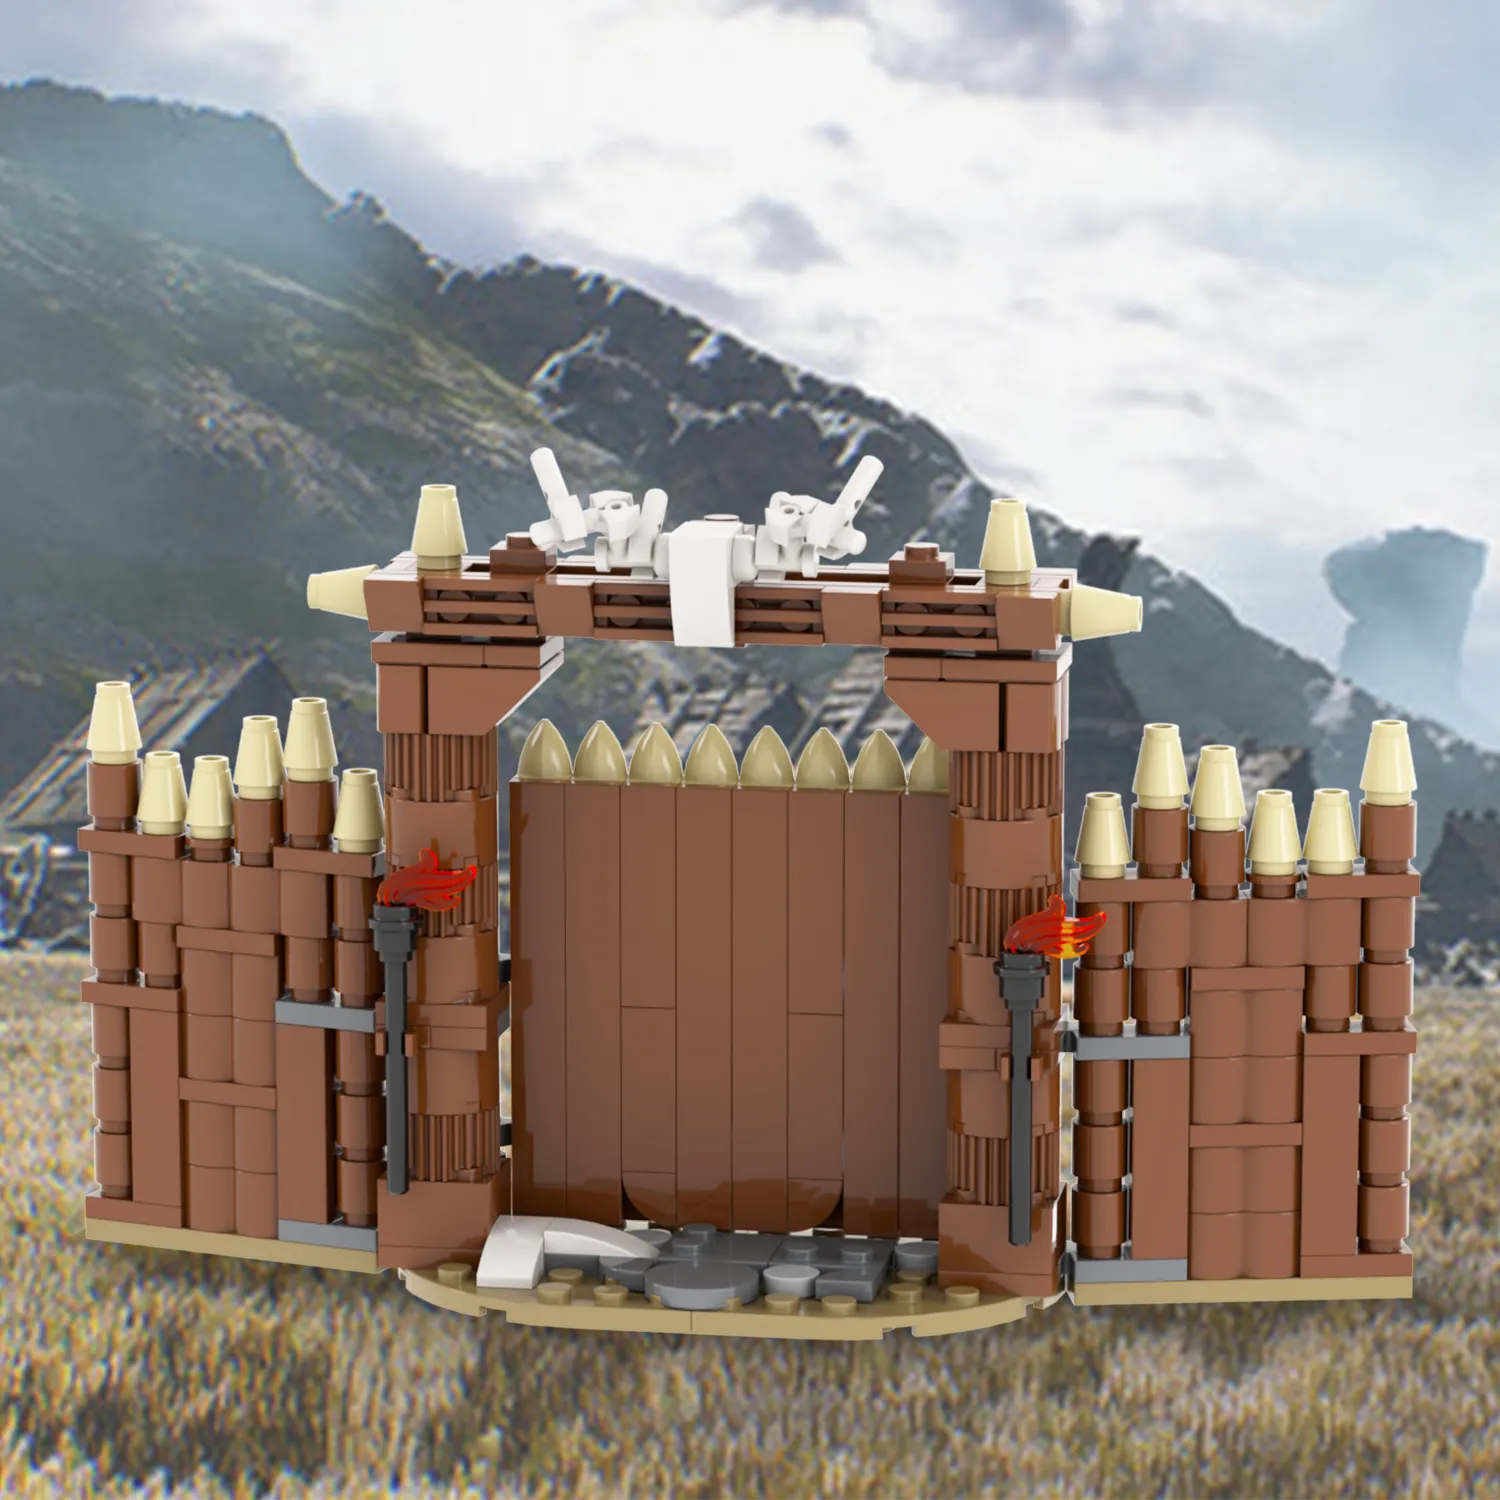 MOC5047 Viking Gate 226Pcs Bricks Military Series Mittelalter liche Kriege Waffen zubehör Bildungs bausteine Spielzeug für Kinder